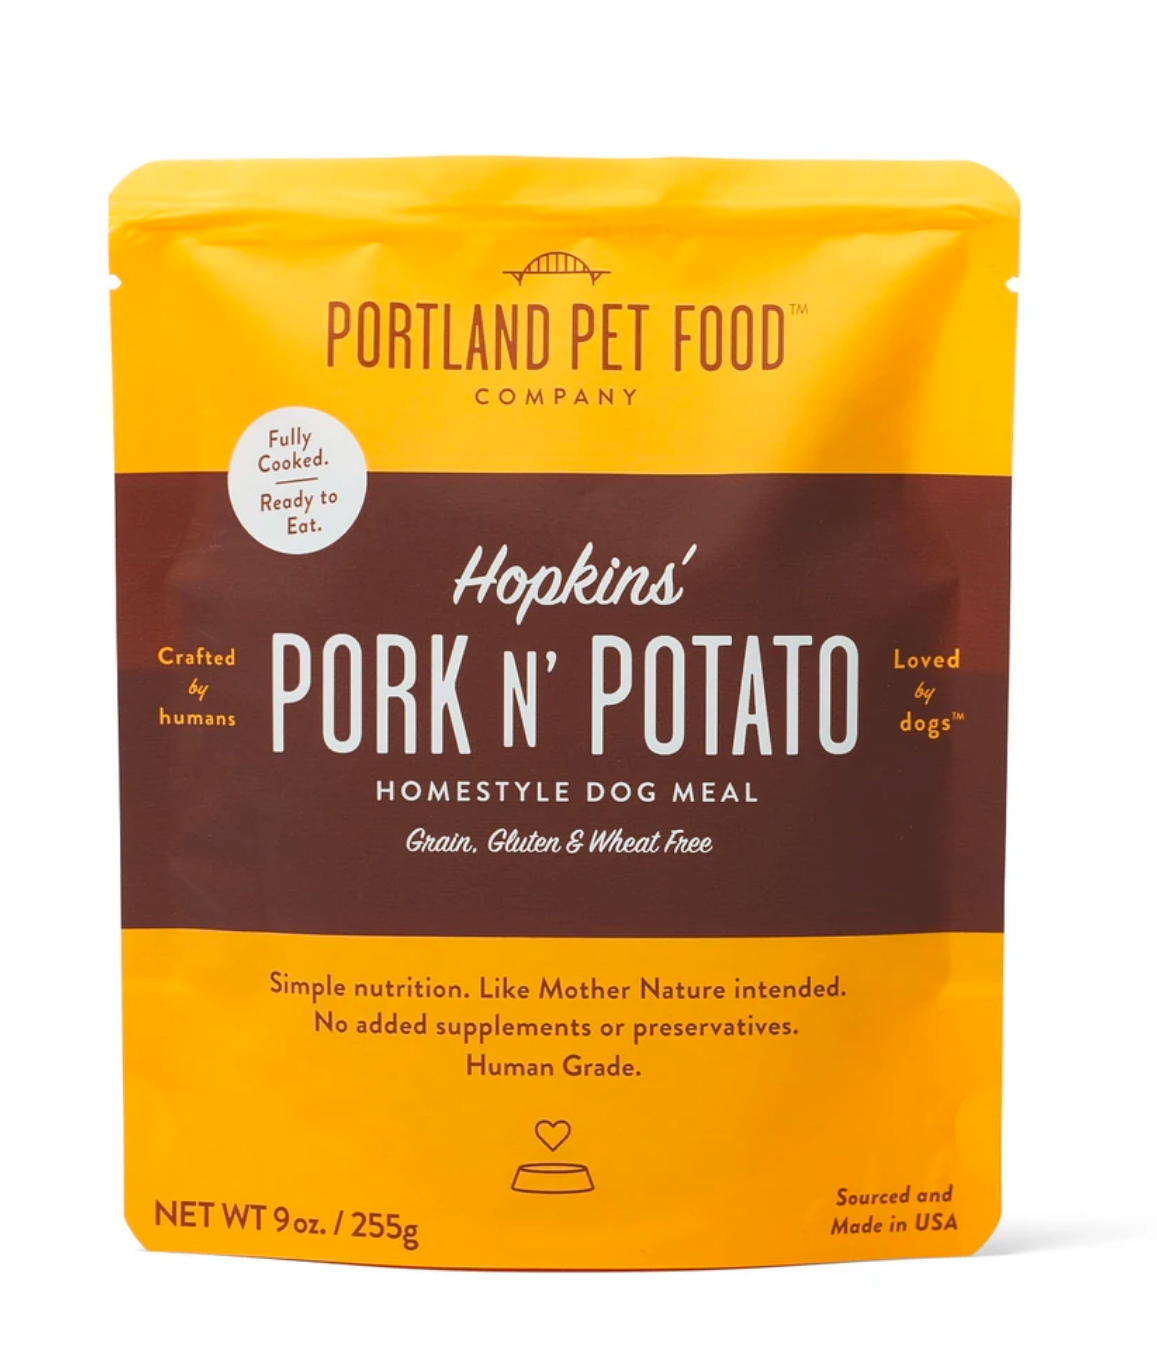 Retort Meals: Hopkins Pork N' Potato Homestyle Dog Meal front